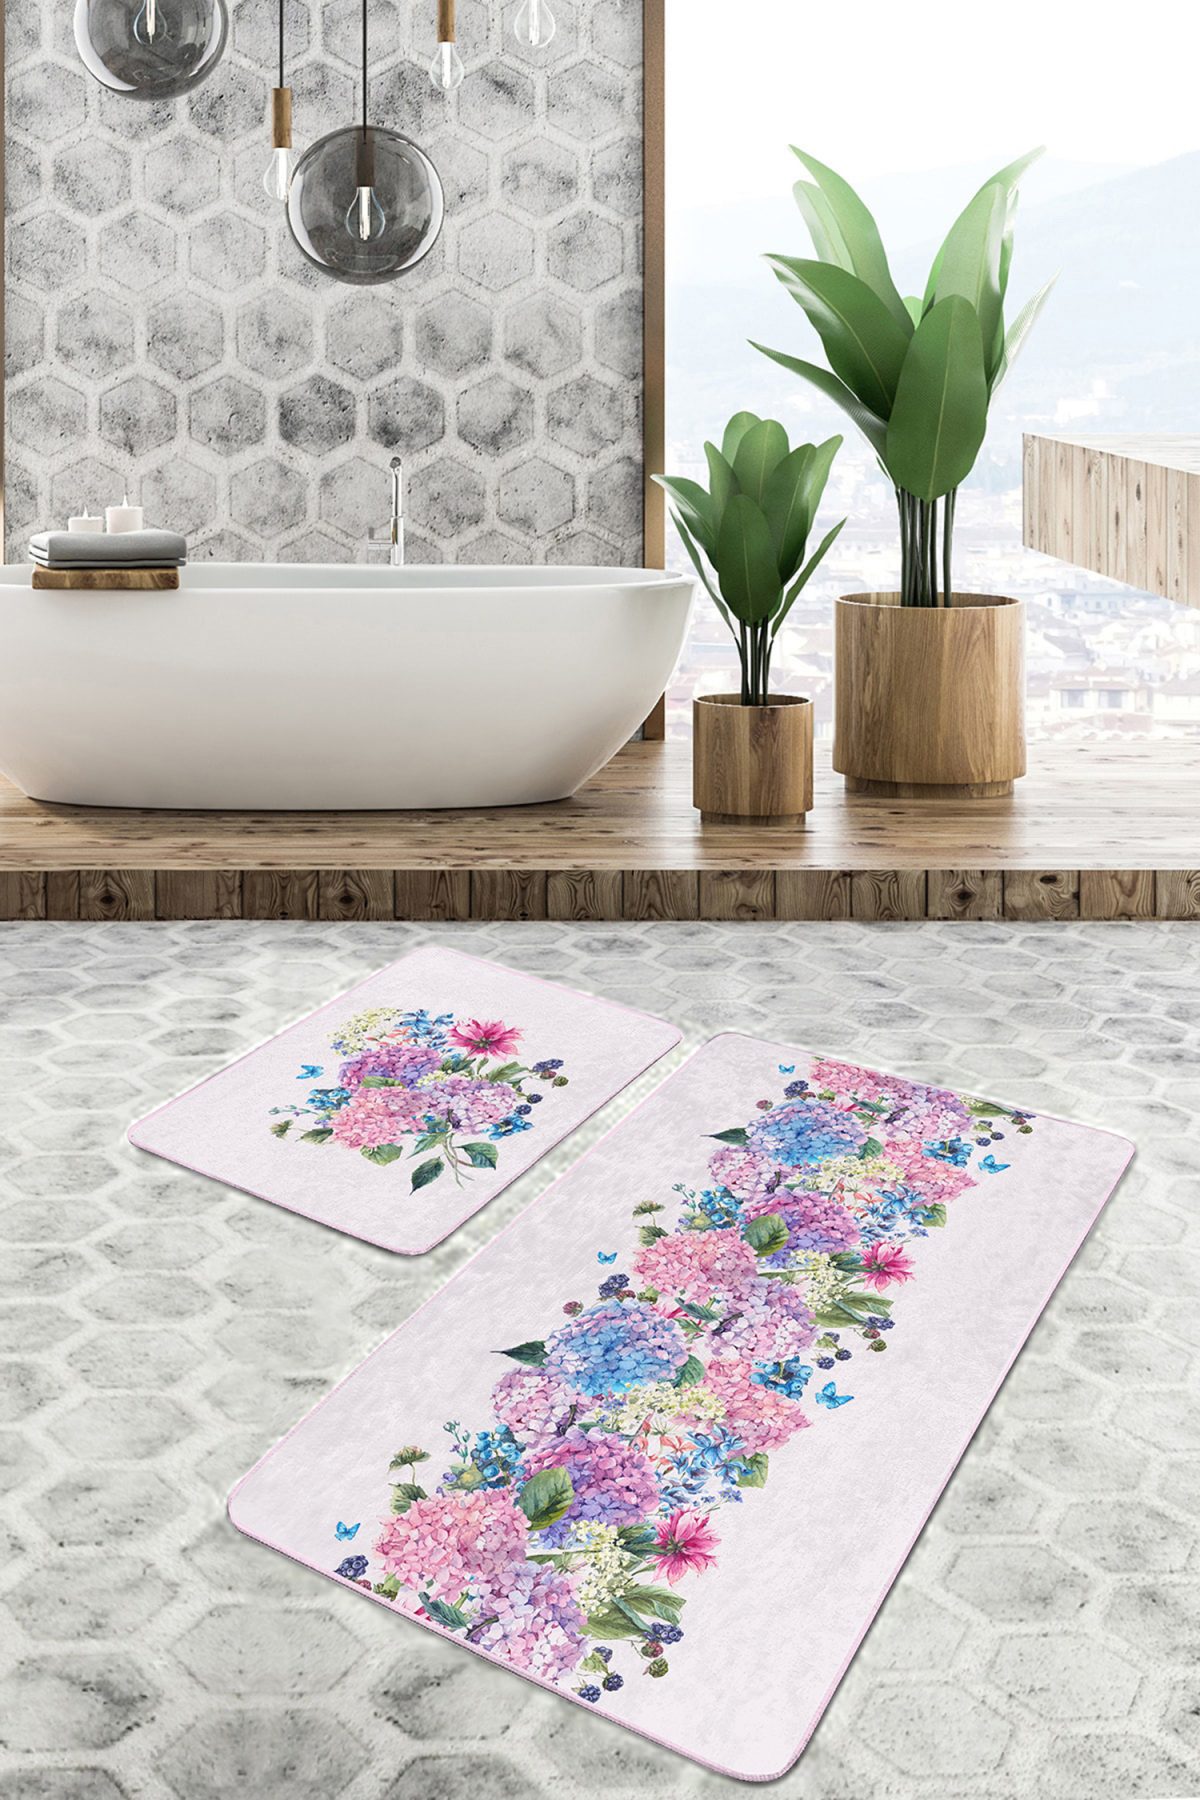 Rengarenk Ortanca Çiçekleri Özel Tasarım 2'li Kaymaz Tabanlı Banyo & Mutfak Paspas Takımı Realhomes